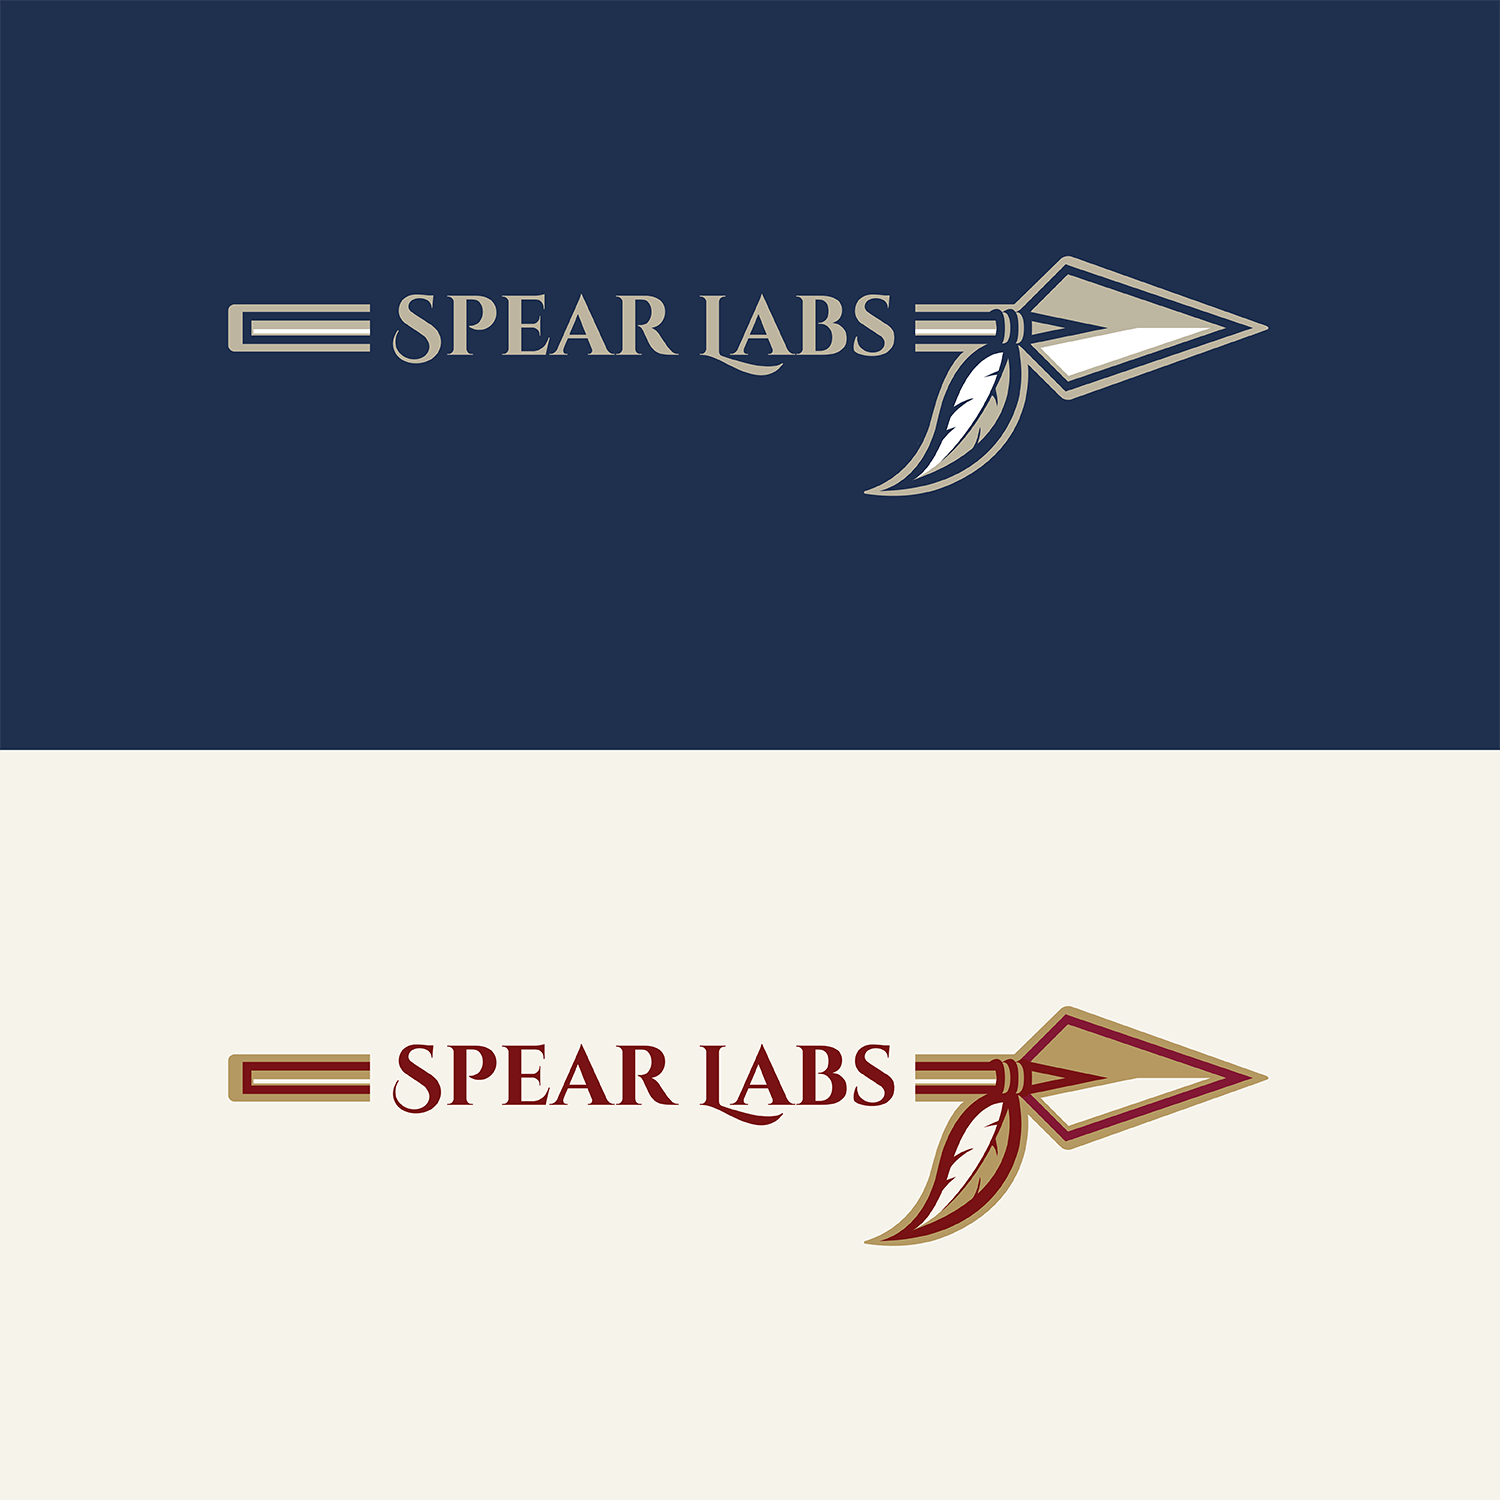 Spear Logo - Bold, Serious, Communication Logo Design for SPEAR or SL or SPEAR ...